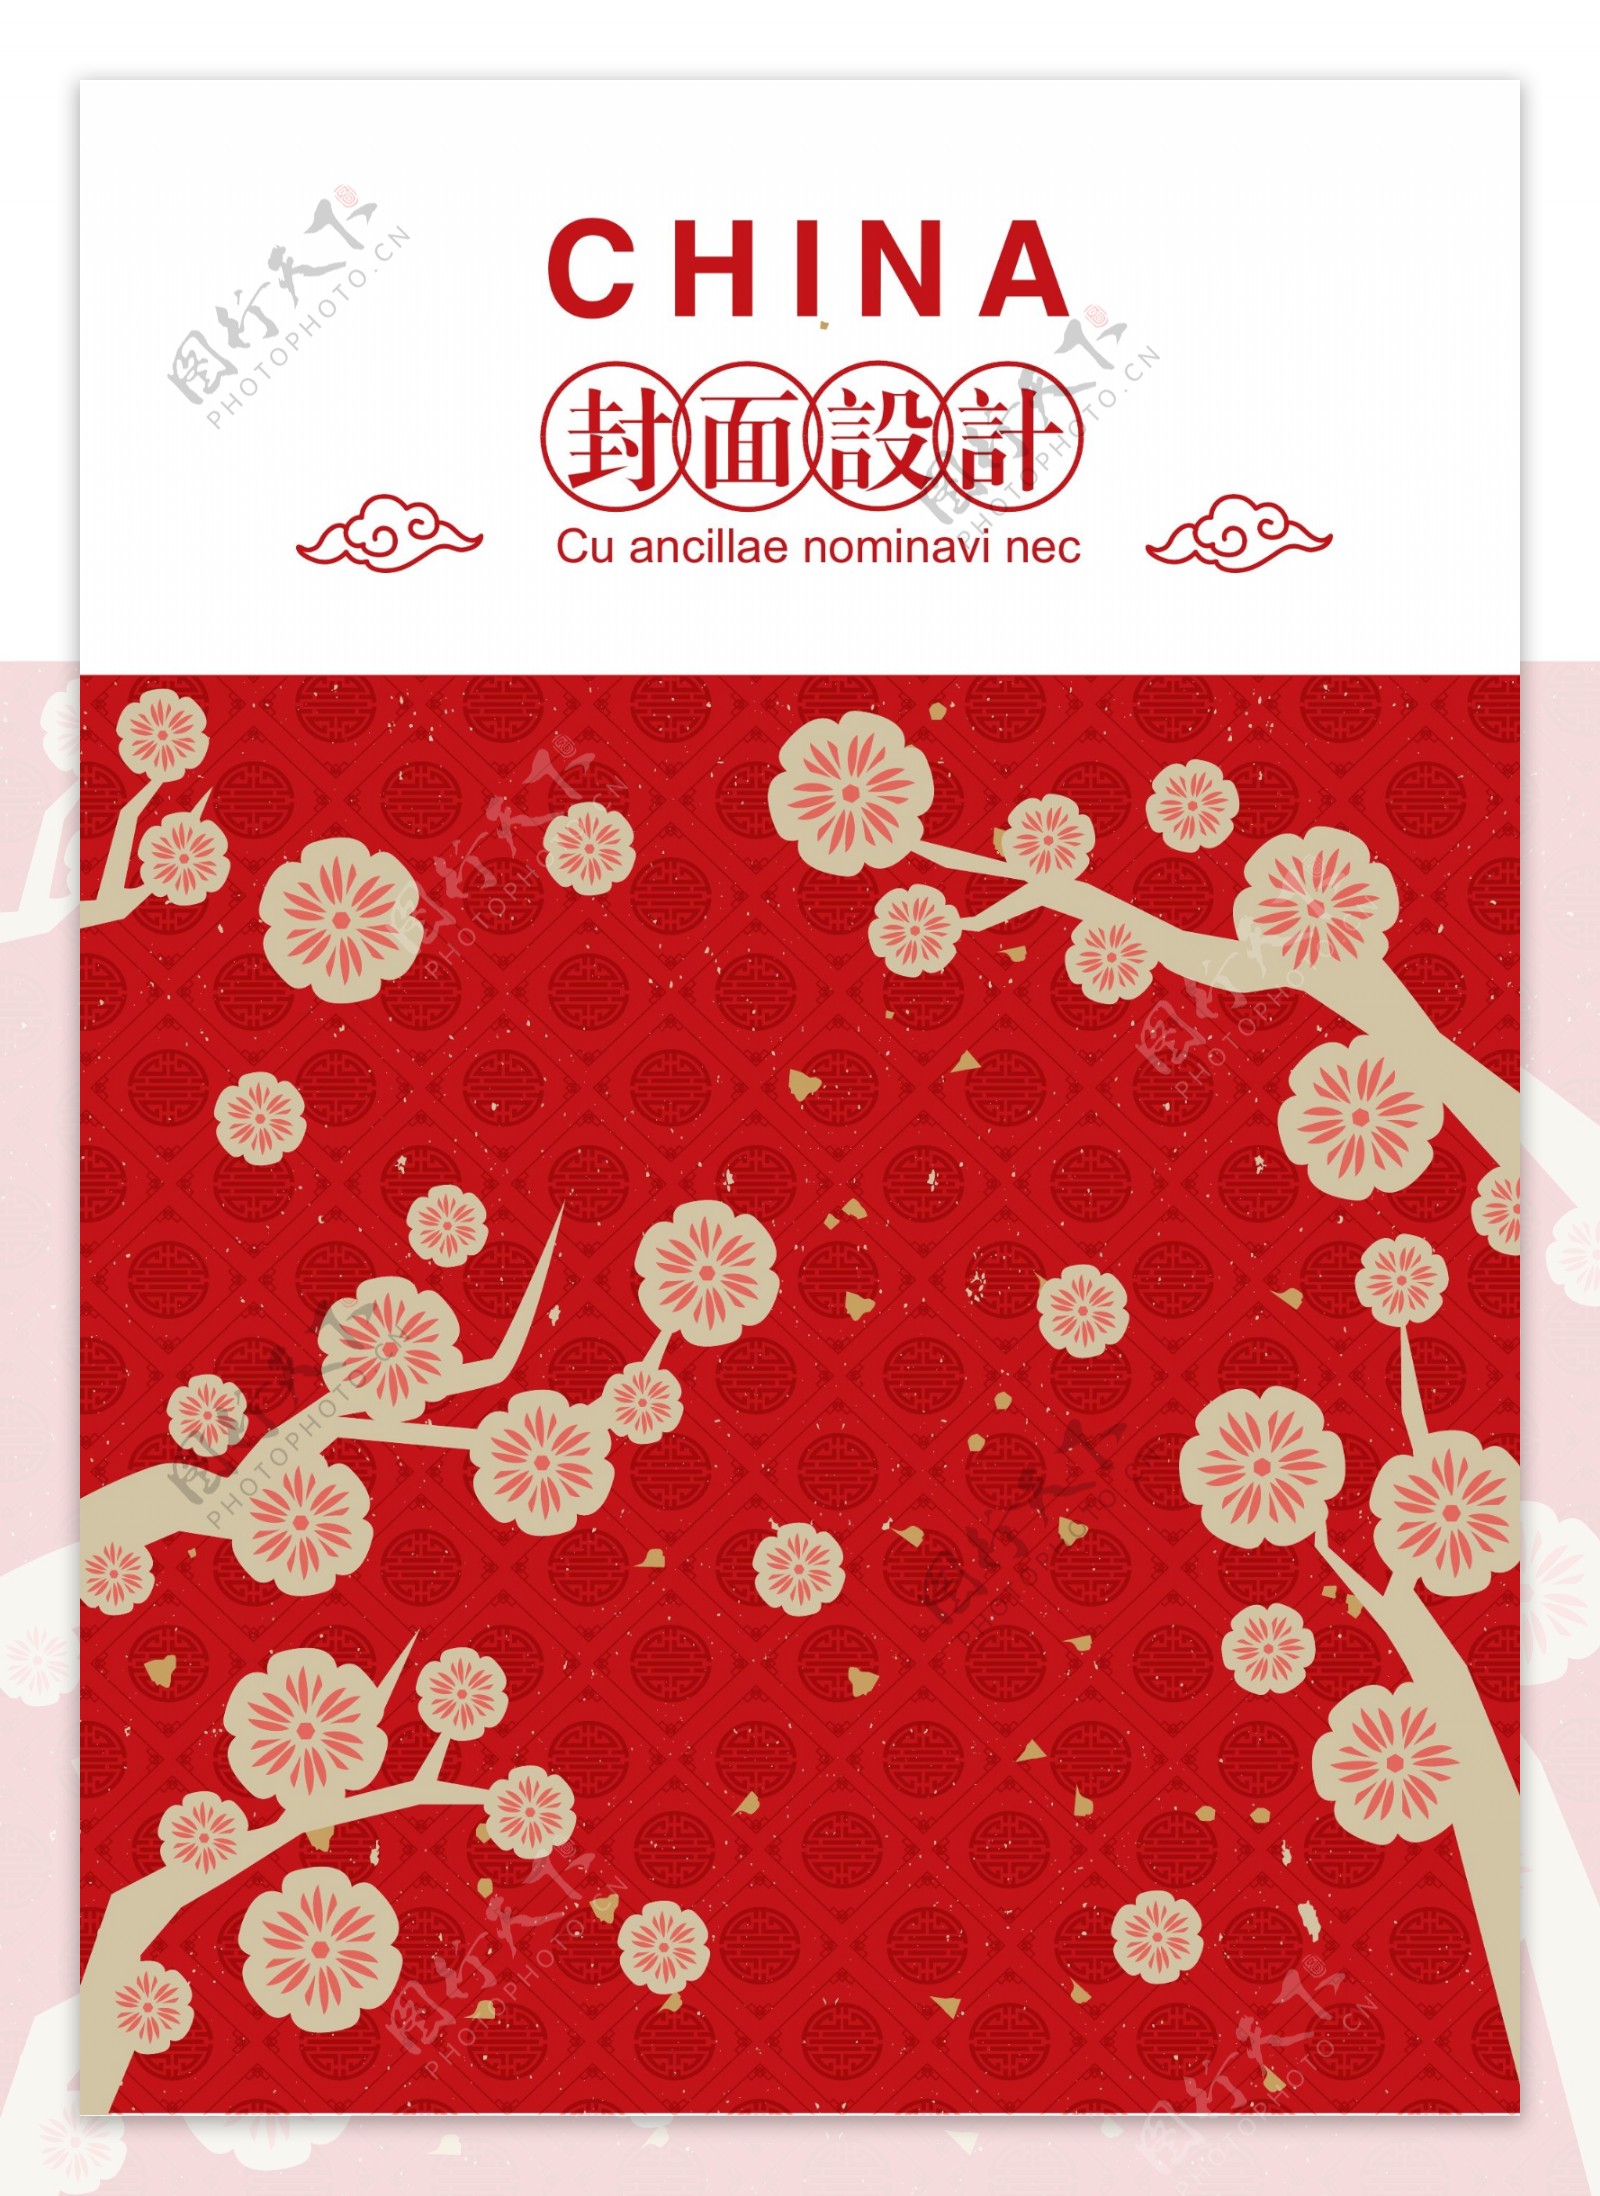 中国传统红色电池盖设计海报